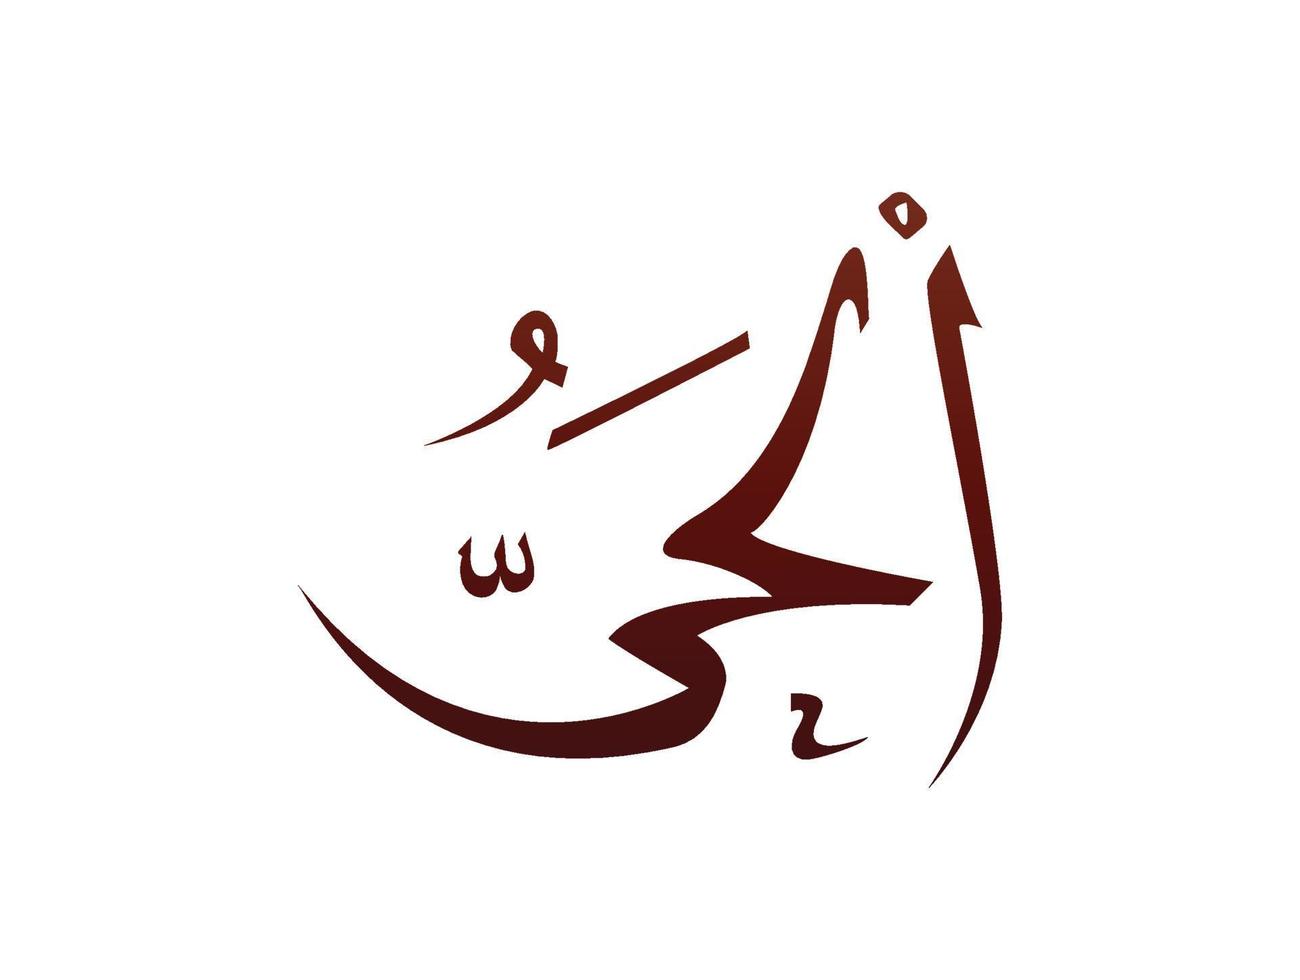 islamitisch religieus arabisch arabisch kalligrafie teken van allah naam patroon vector allah naam van god